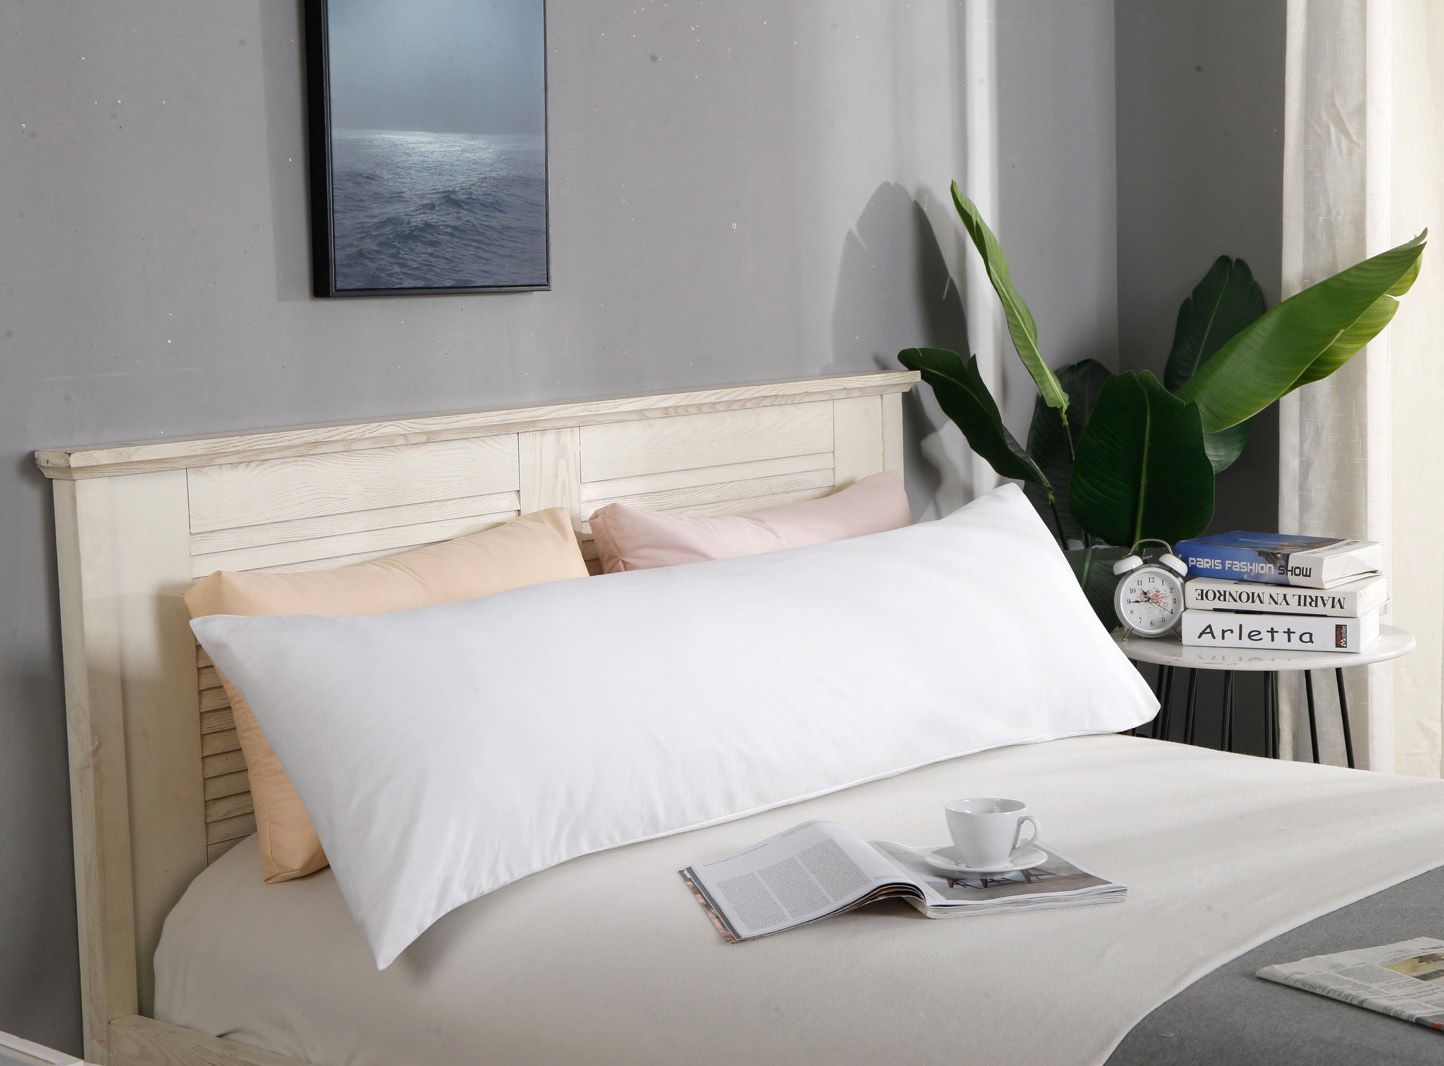 1000TC Premium Ultra Soft Body Pillowcase - White - Newstart Furniture